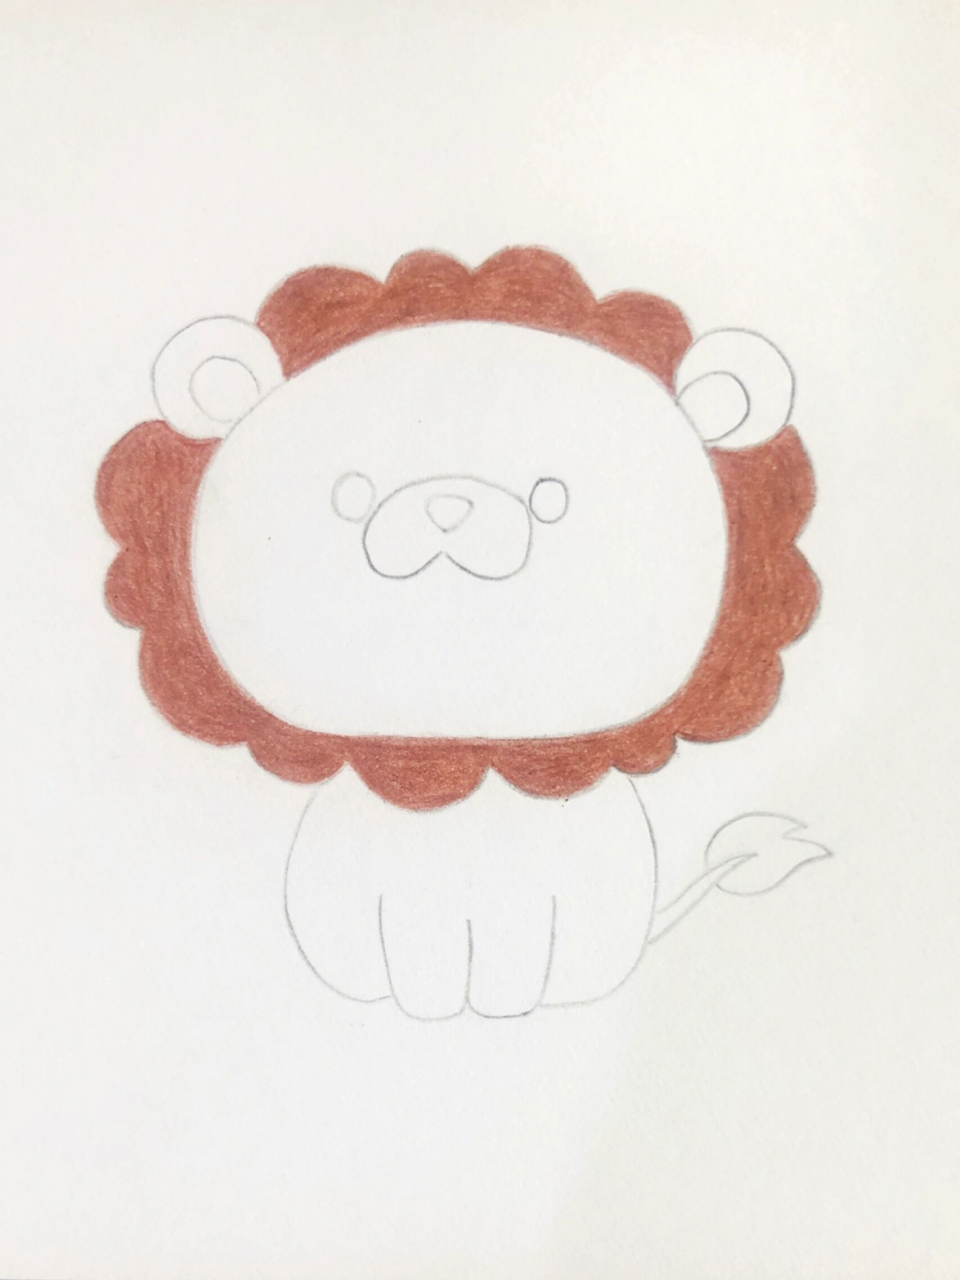 狮子简笔画q版图片